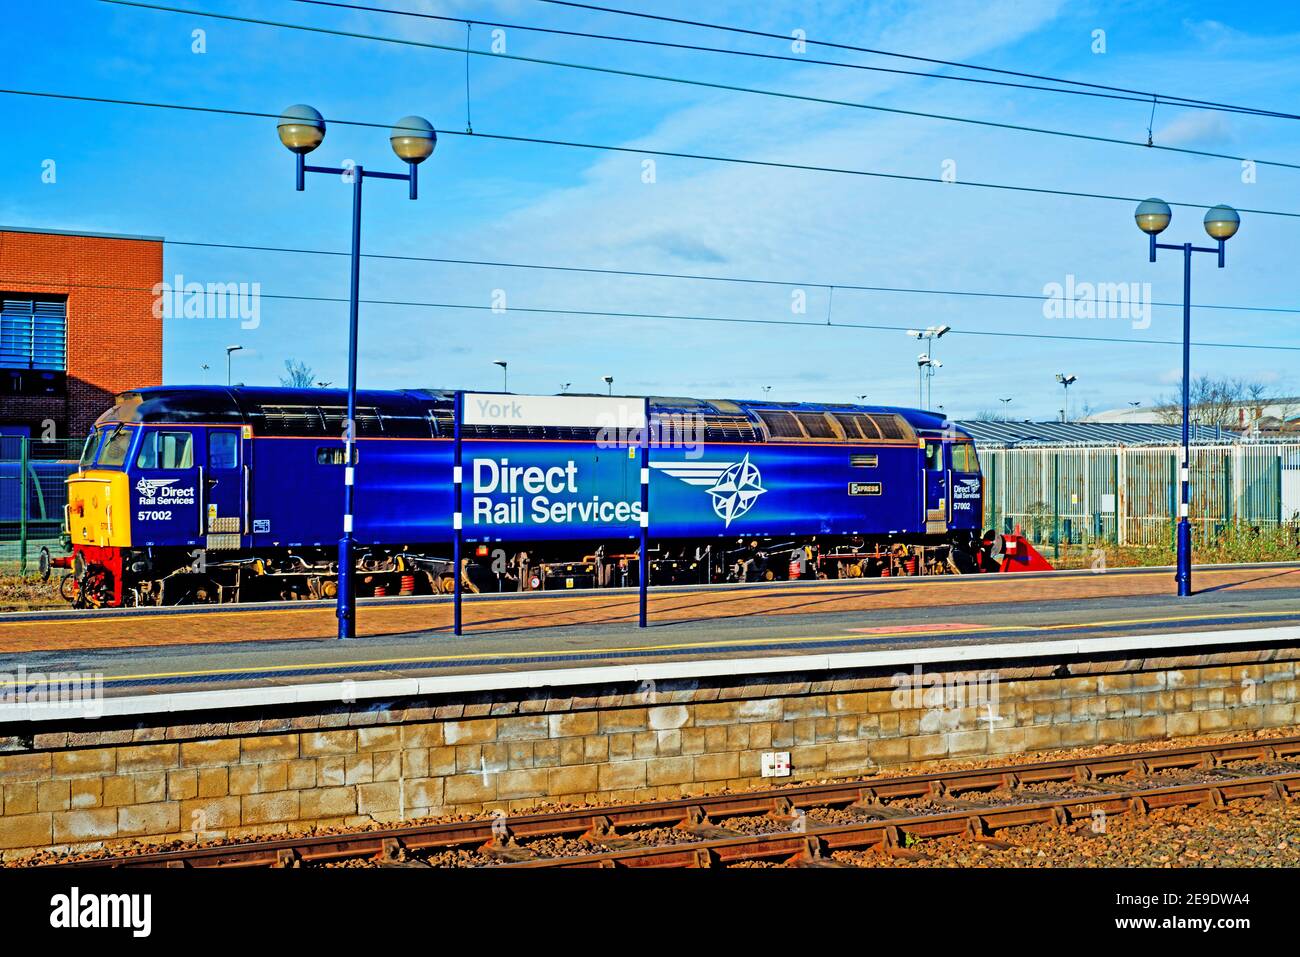 Direct Rail Services Class 52002 Express a été poignardé à York Railway Station Angleterre le 1er février 2021 Banque D'Images